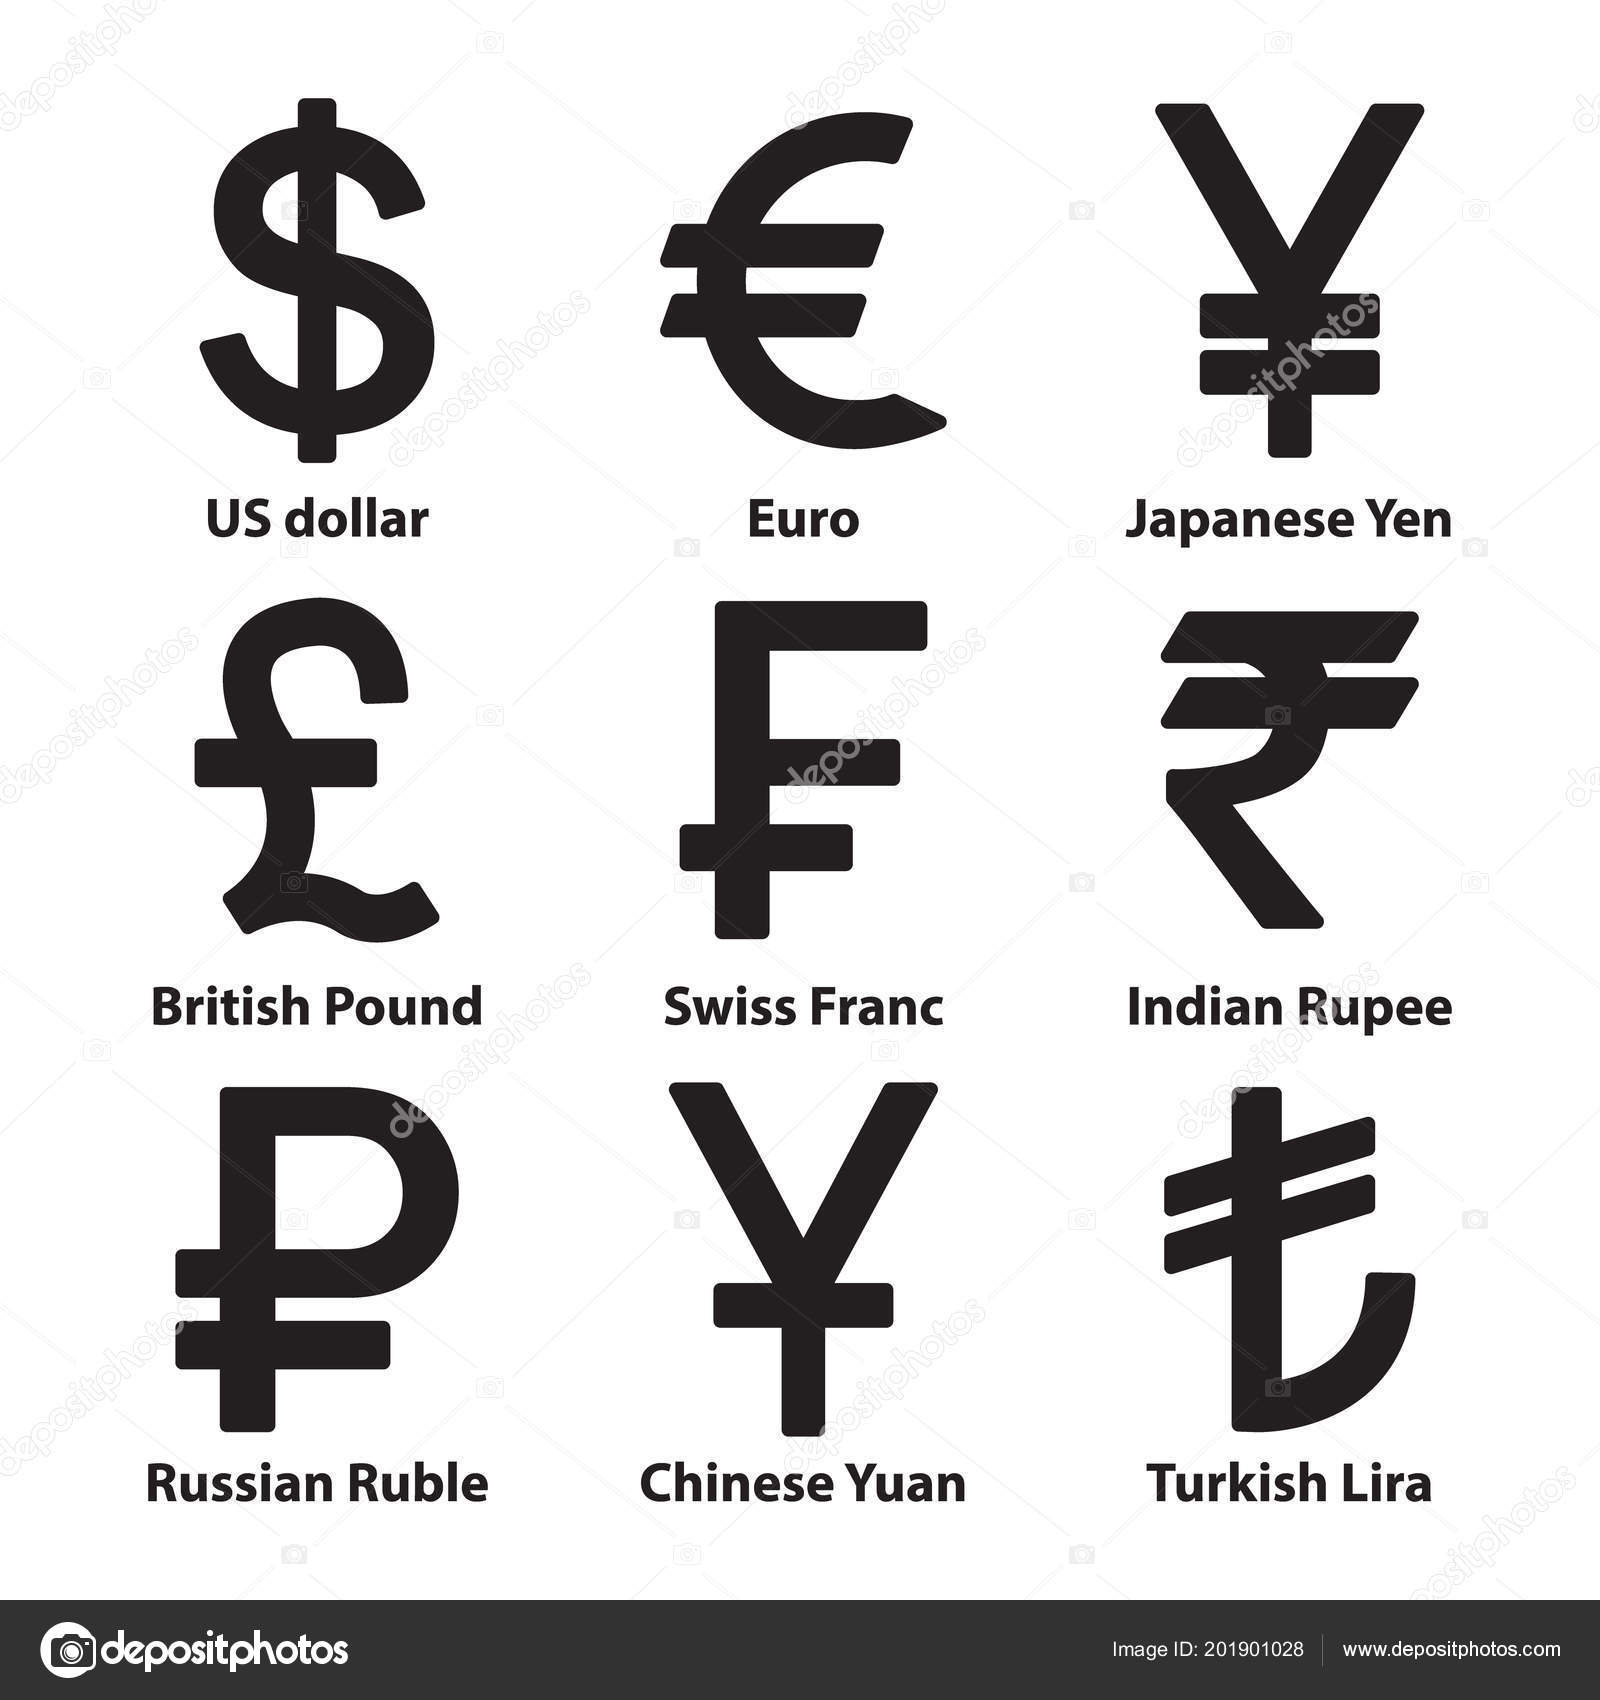 Знаки иностранной валюты. Как обозначается китайская валюта юань. Китайский юань символ валюты. Юань обозначение валюты символ.